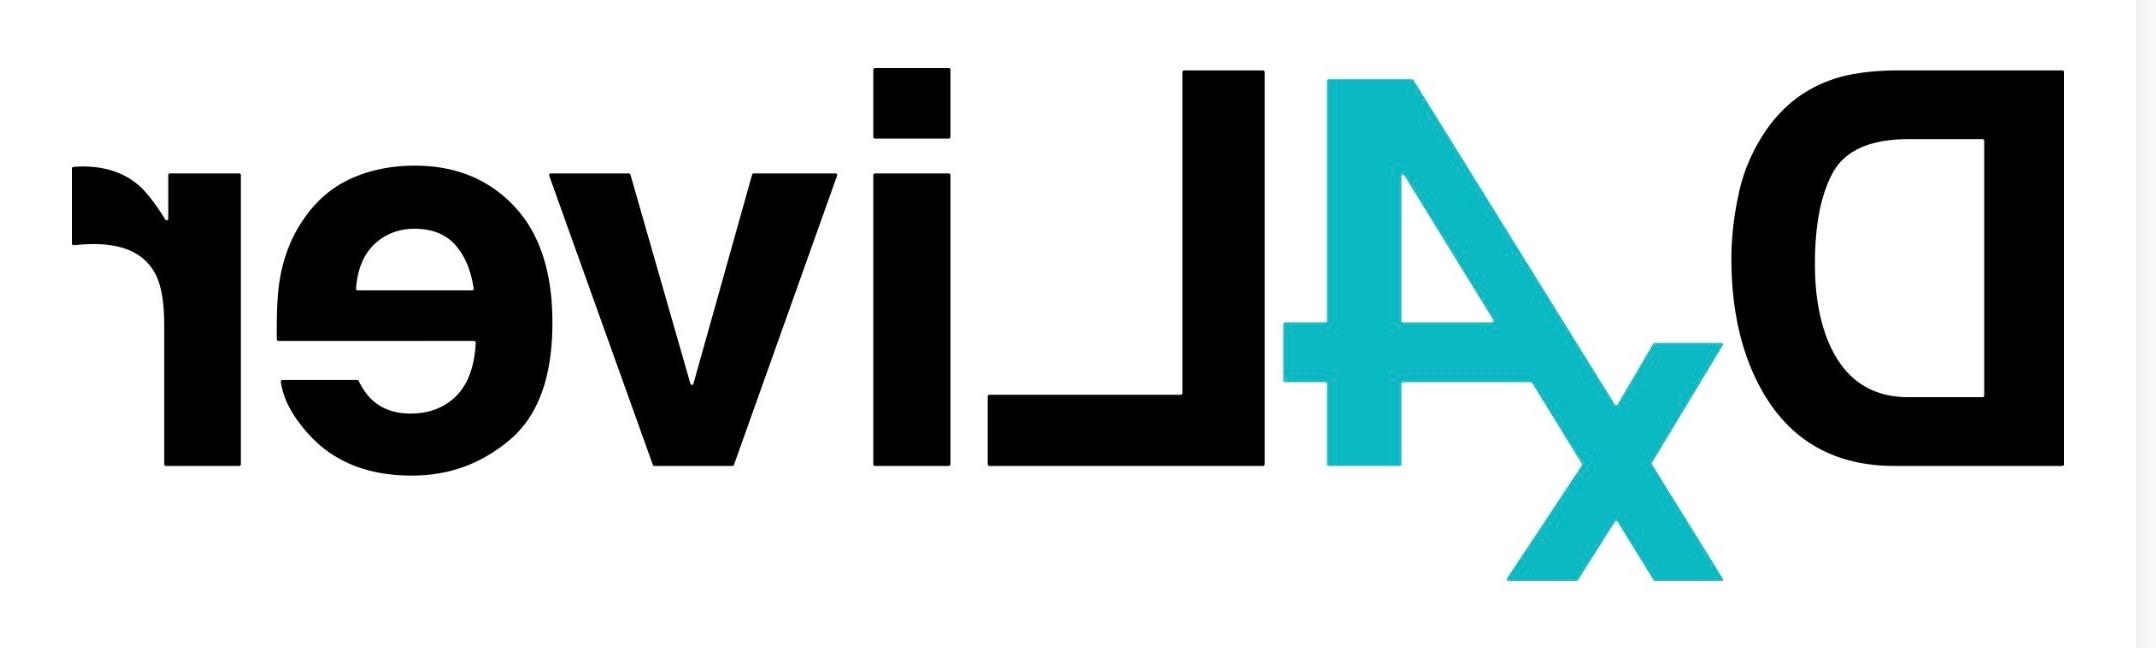 Dx4liver Logo